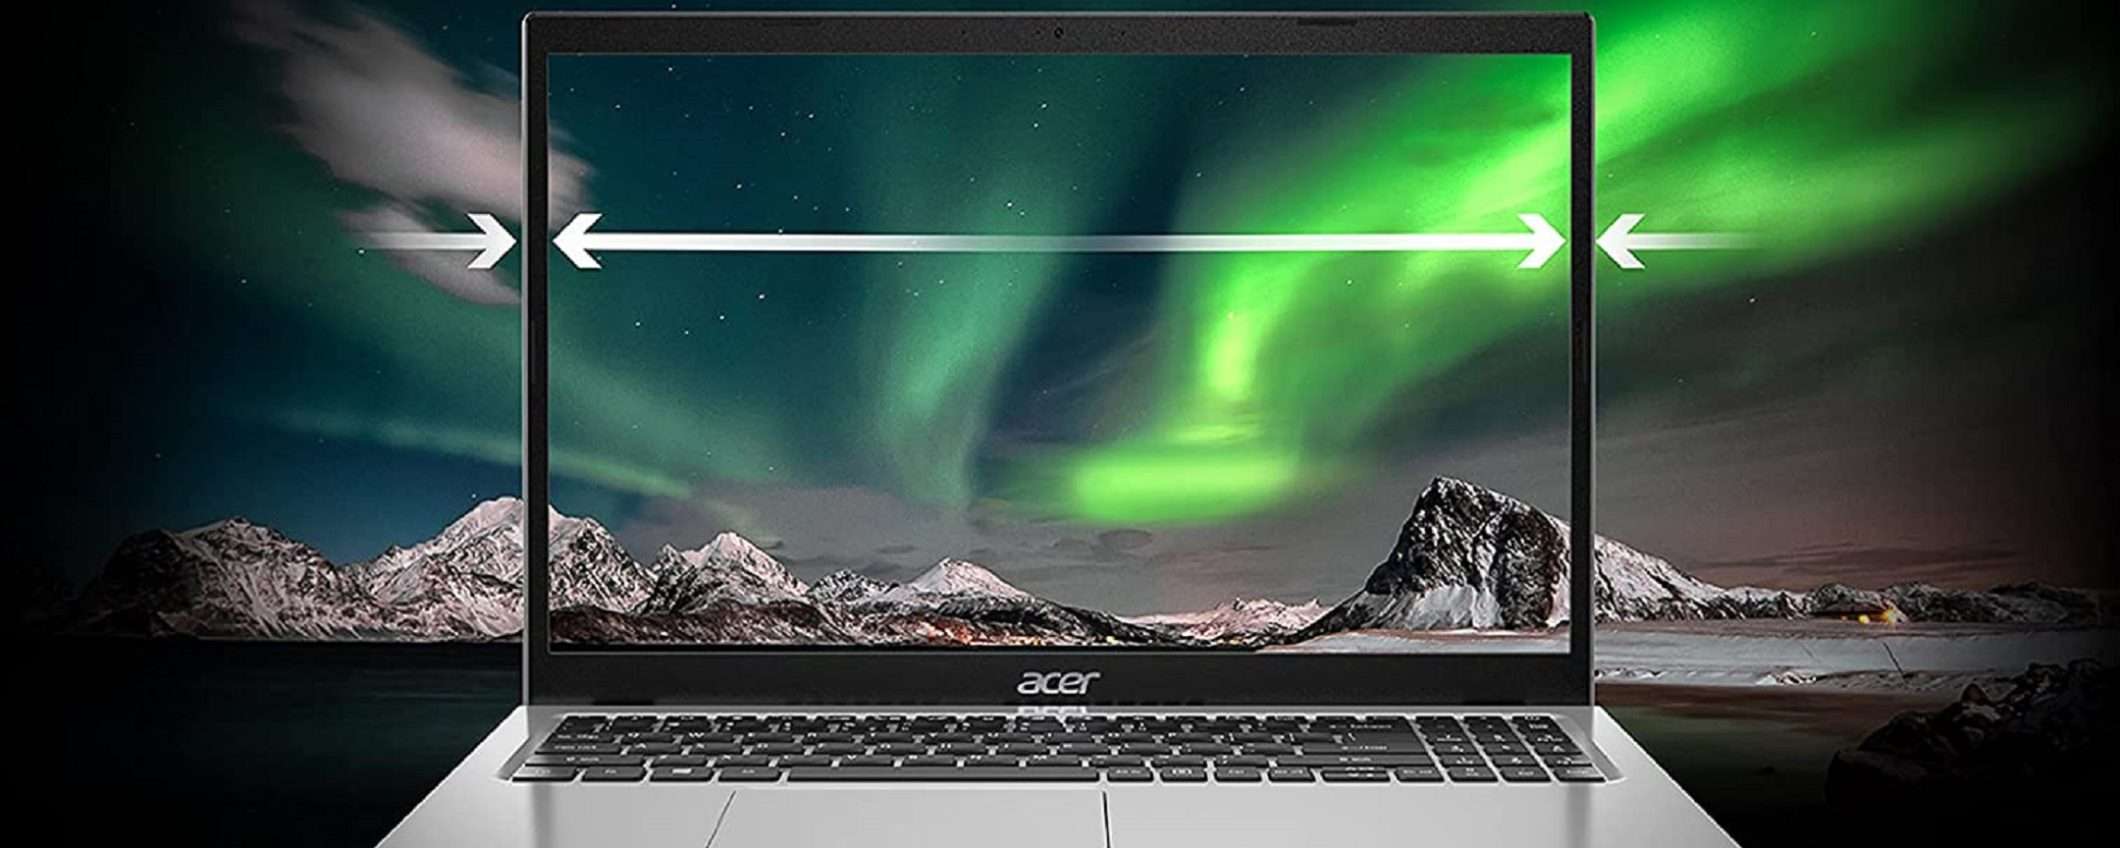 Laptop Acer Aspire 1: la giusta potenza a un prezzo molto basso